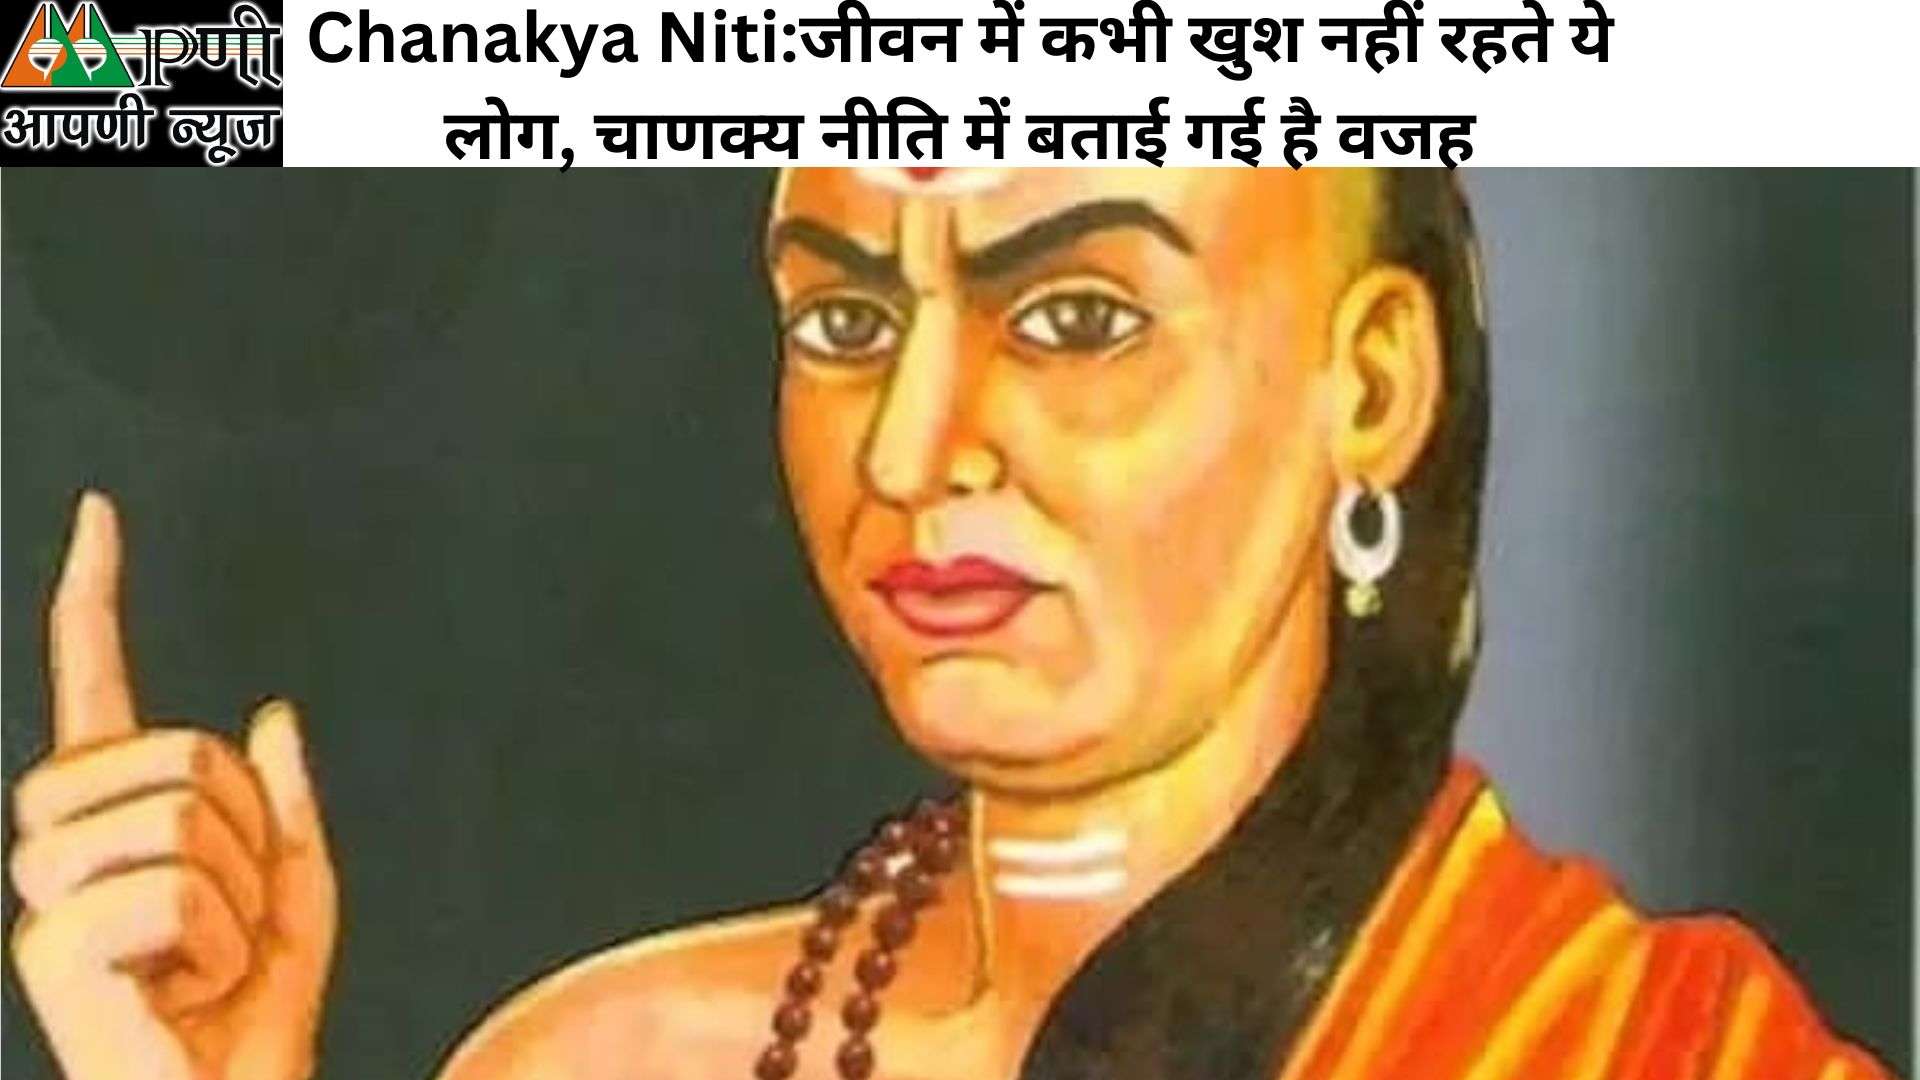 Chanakya Niti:जीवन में कभी खुश नहीं रहते ये लोग, चाणक्‍य नीति में बताई गई है वजह